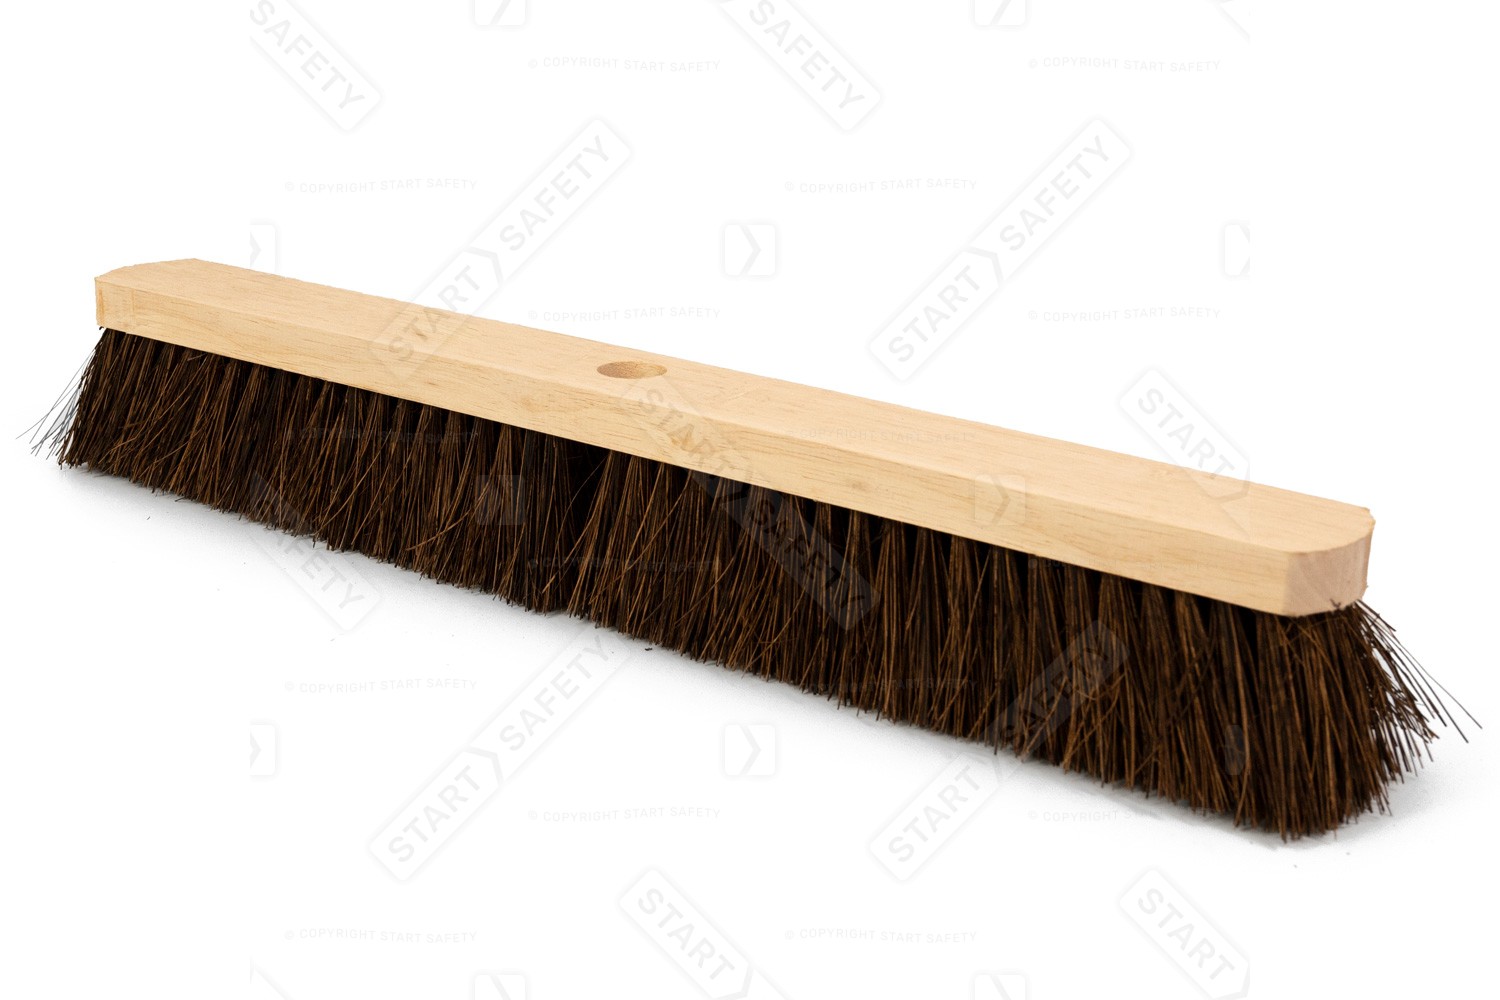 VR7 Large Platform Sweeping Broom